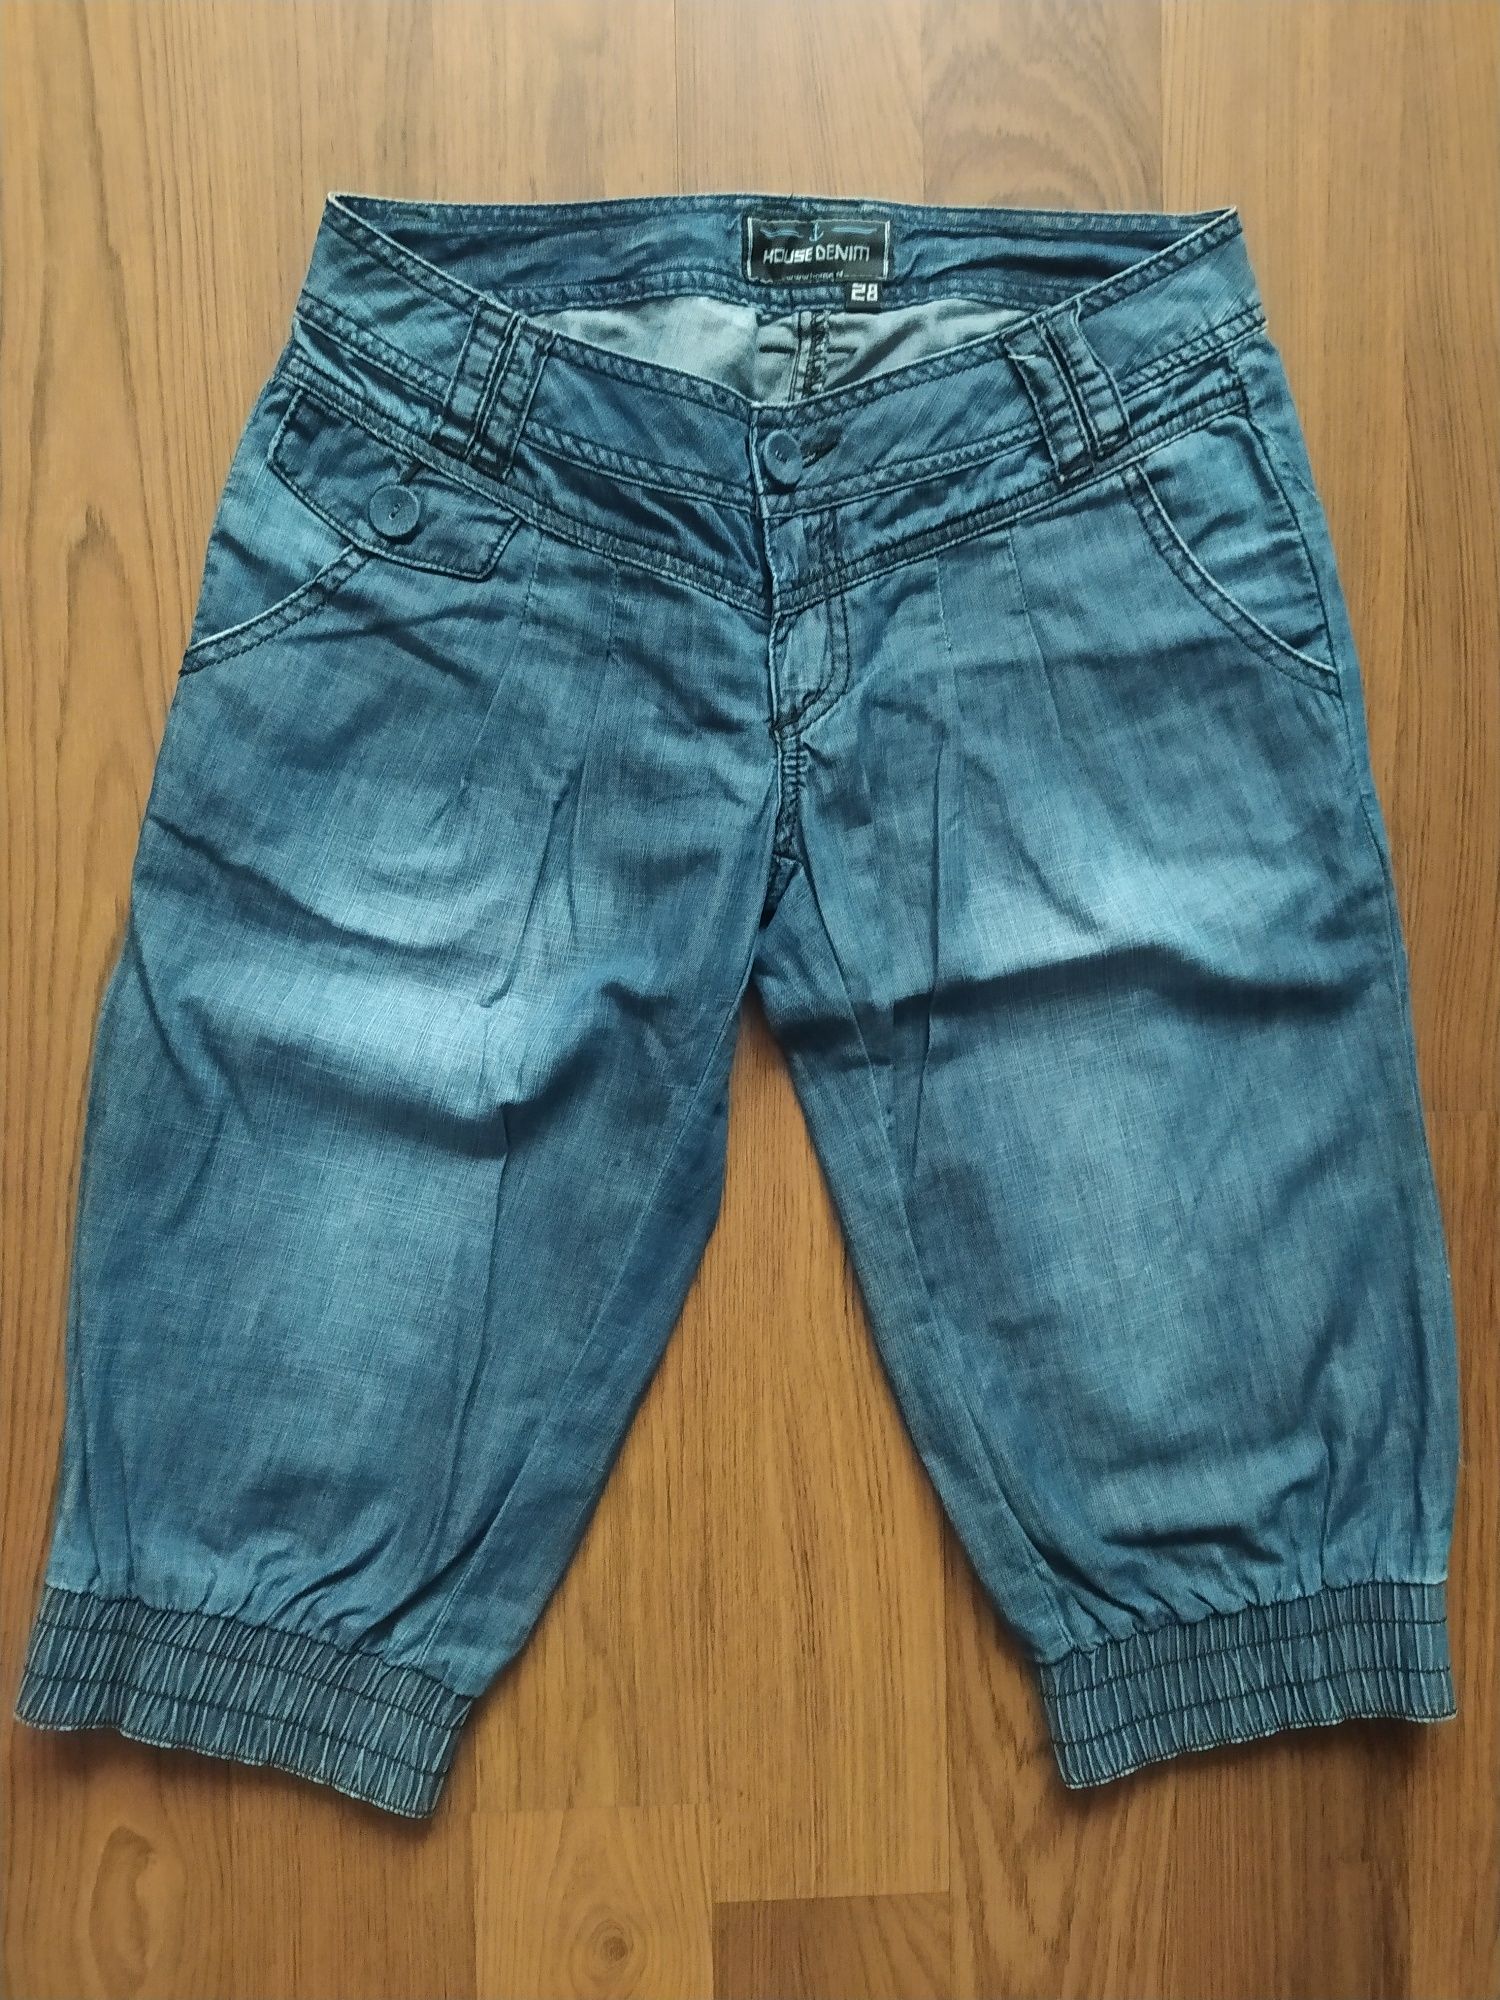 Spodnie krótkie rybaczki House 28 (ok. 38 M) jeans